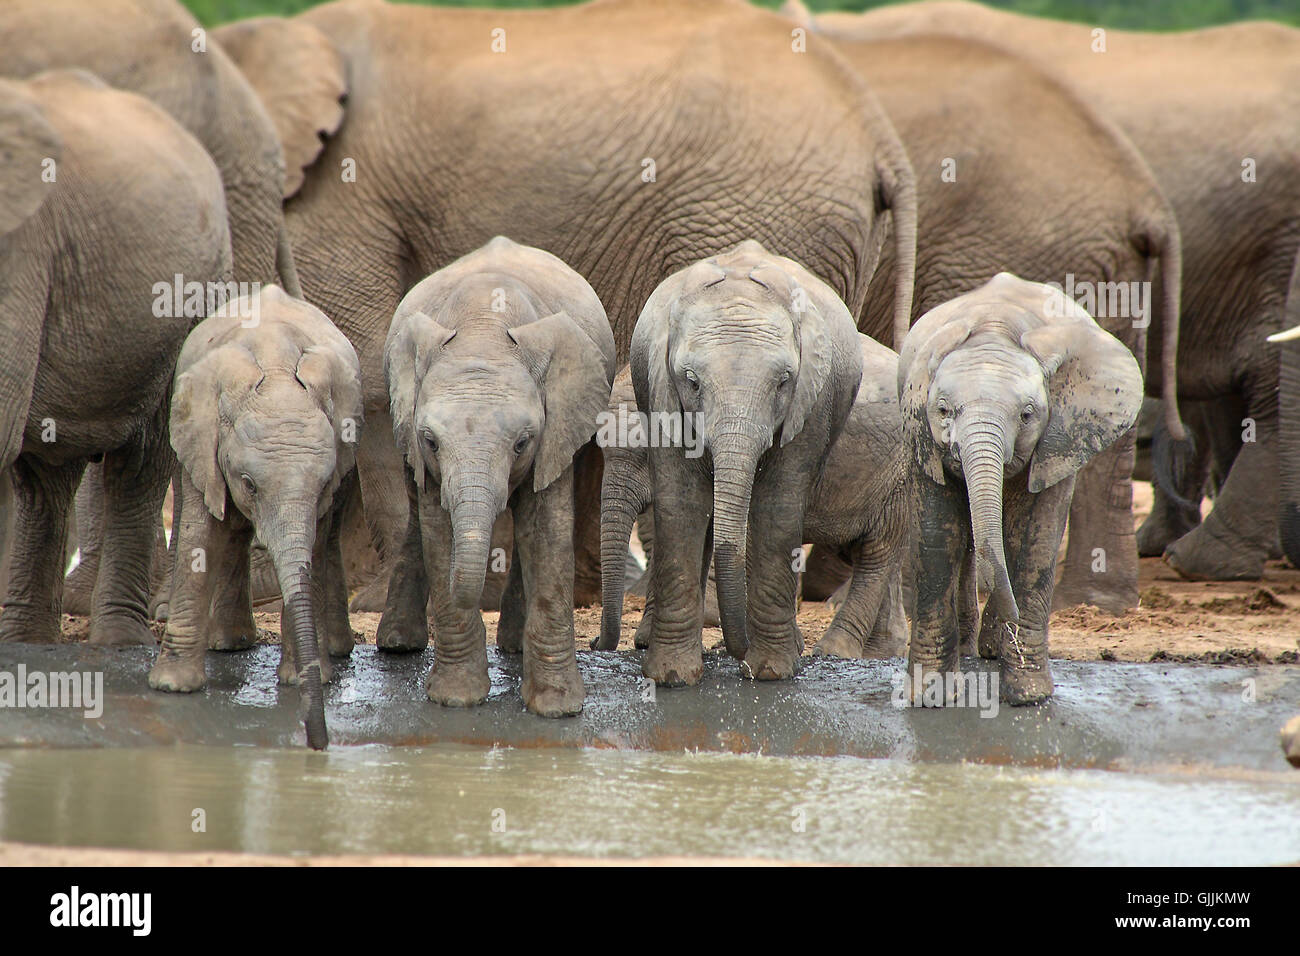 africa elephant tusks Stock Photo